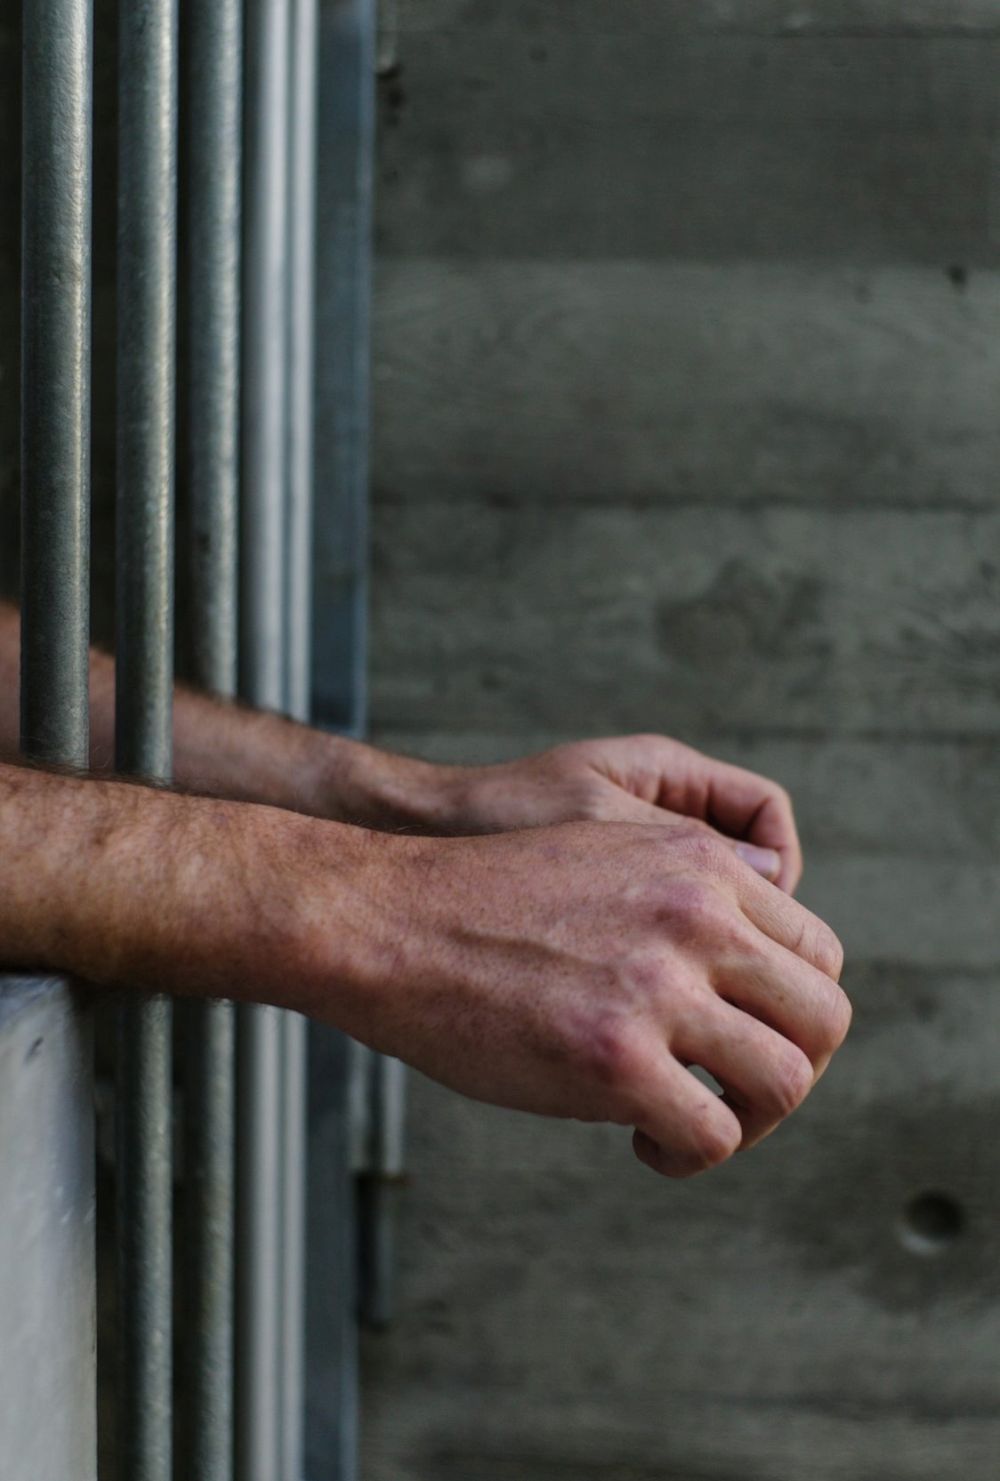 La situation est différente pour un détenu si les raisons de la demande d’aide au suicide sont directement liées à l’incarcération.